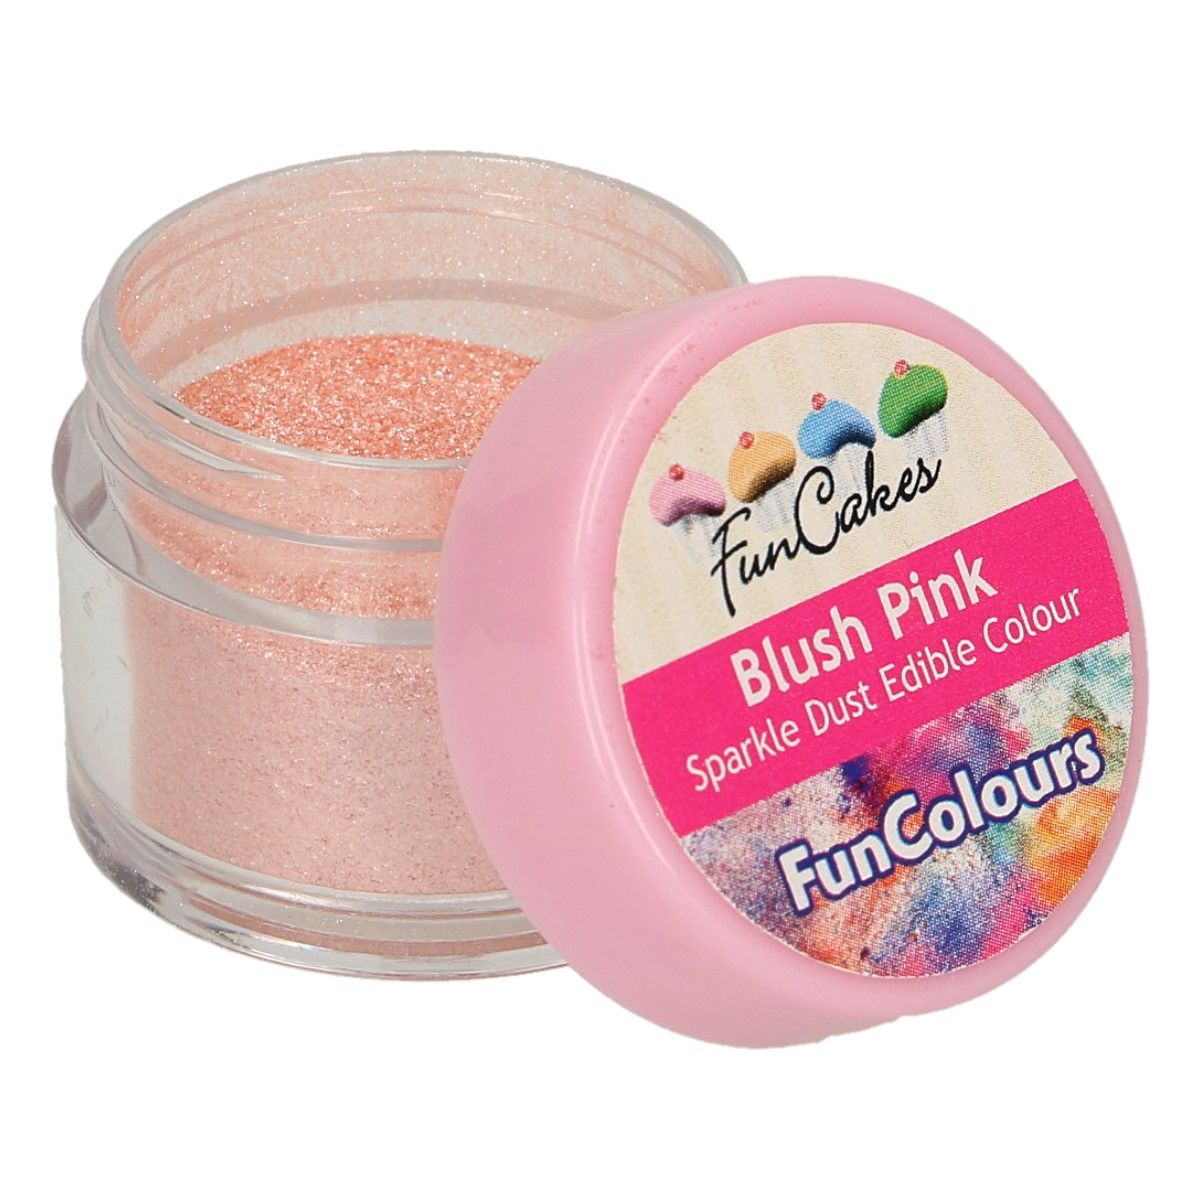 Jedlá glitrová perleťová farba Blush Pink 3,5g, FunCakes, FC50790